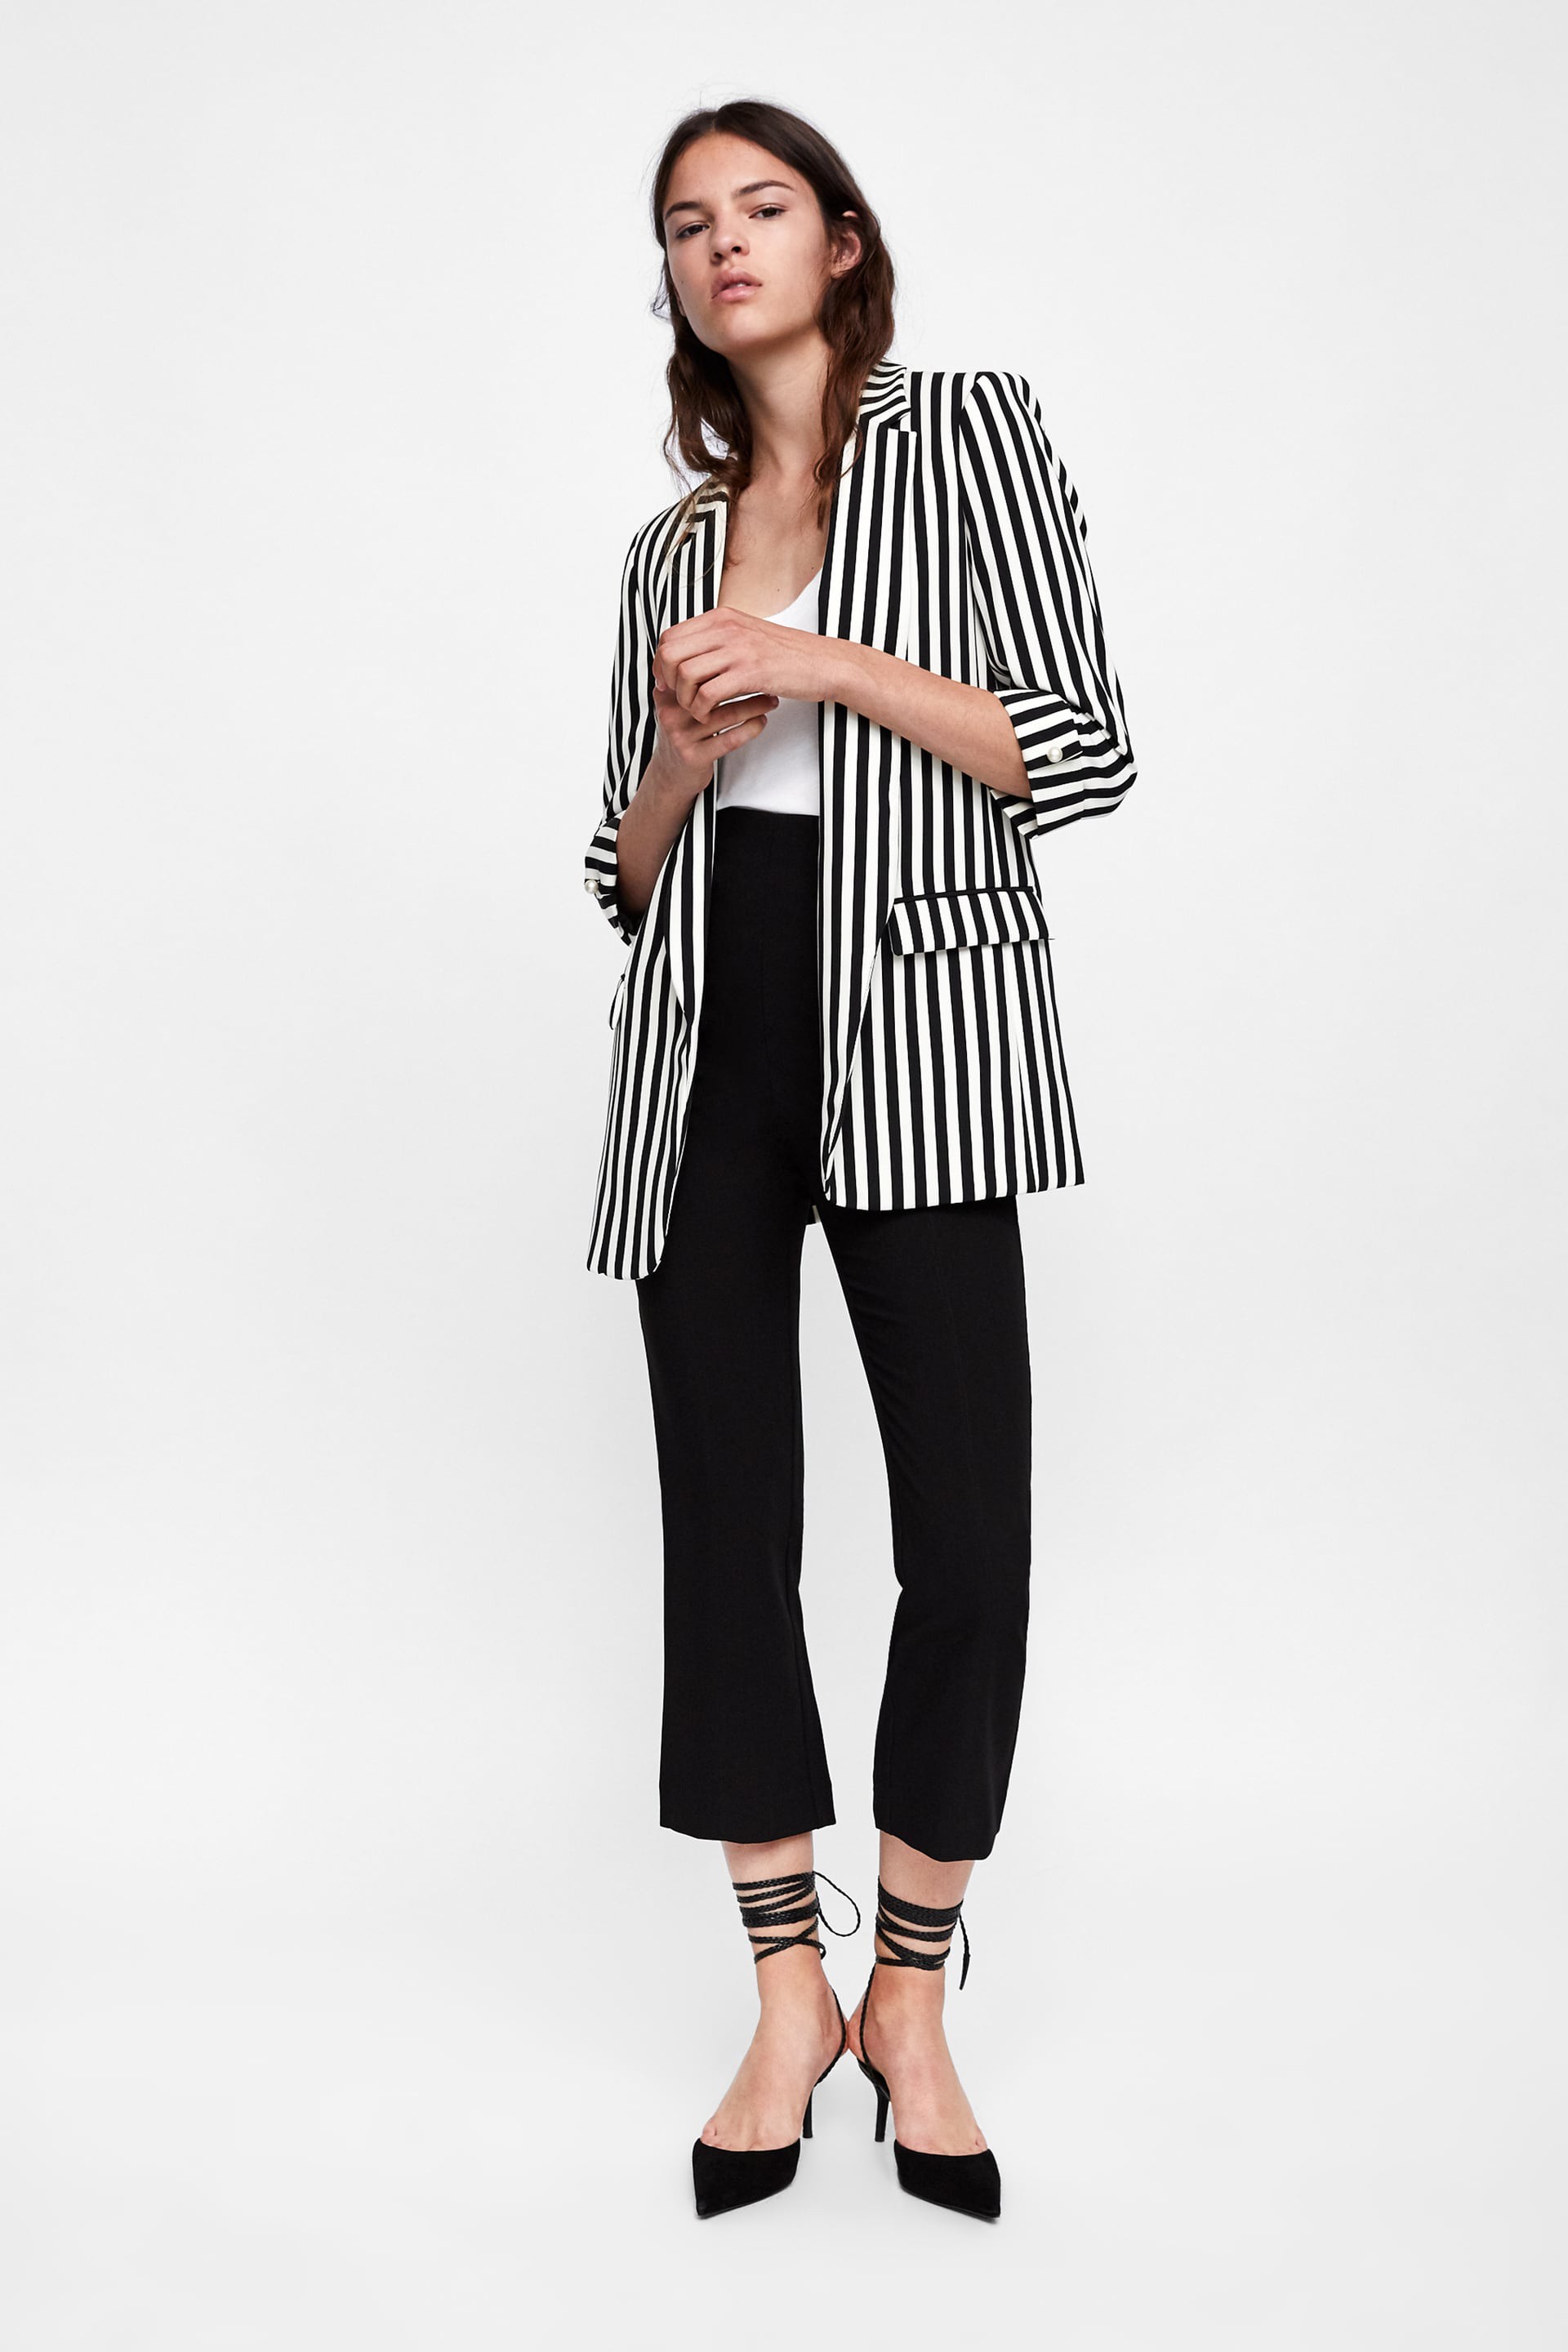 15 mẫu áo blazer của Zara, H&M... thanh lịch mà cực kỳ cá tính dành cho nàng công sở khi thời tiết đang chuyển từ hè sang thu - Ảnh 4.